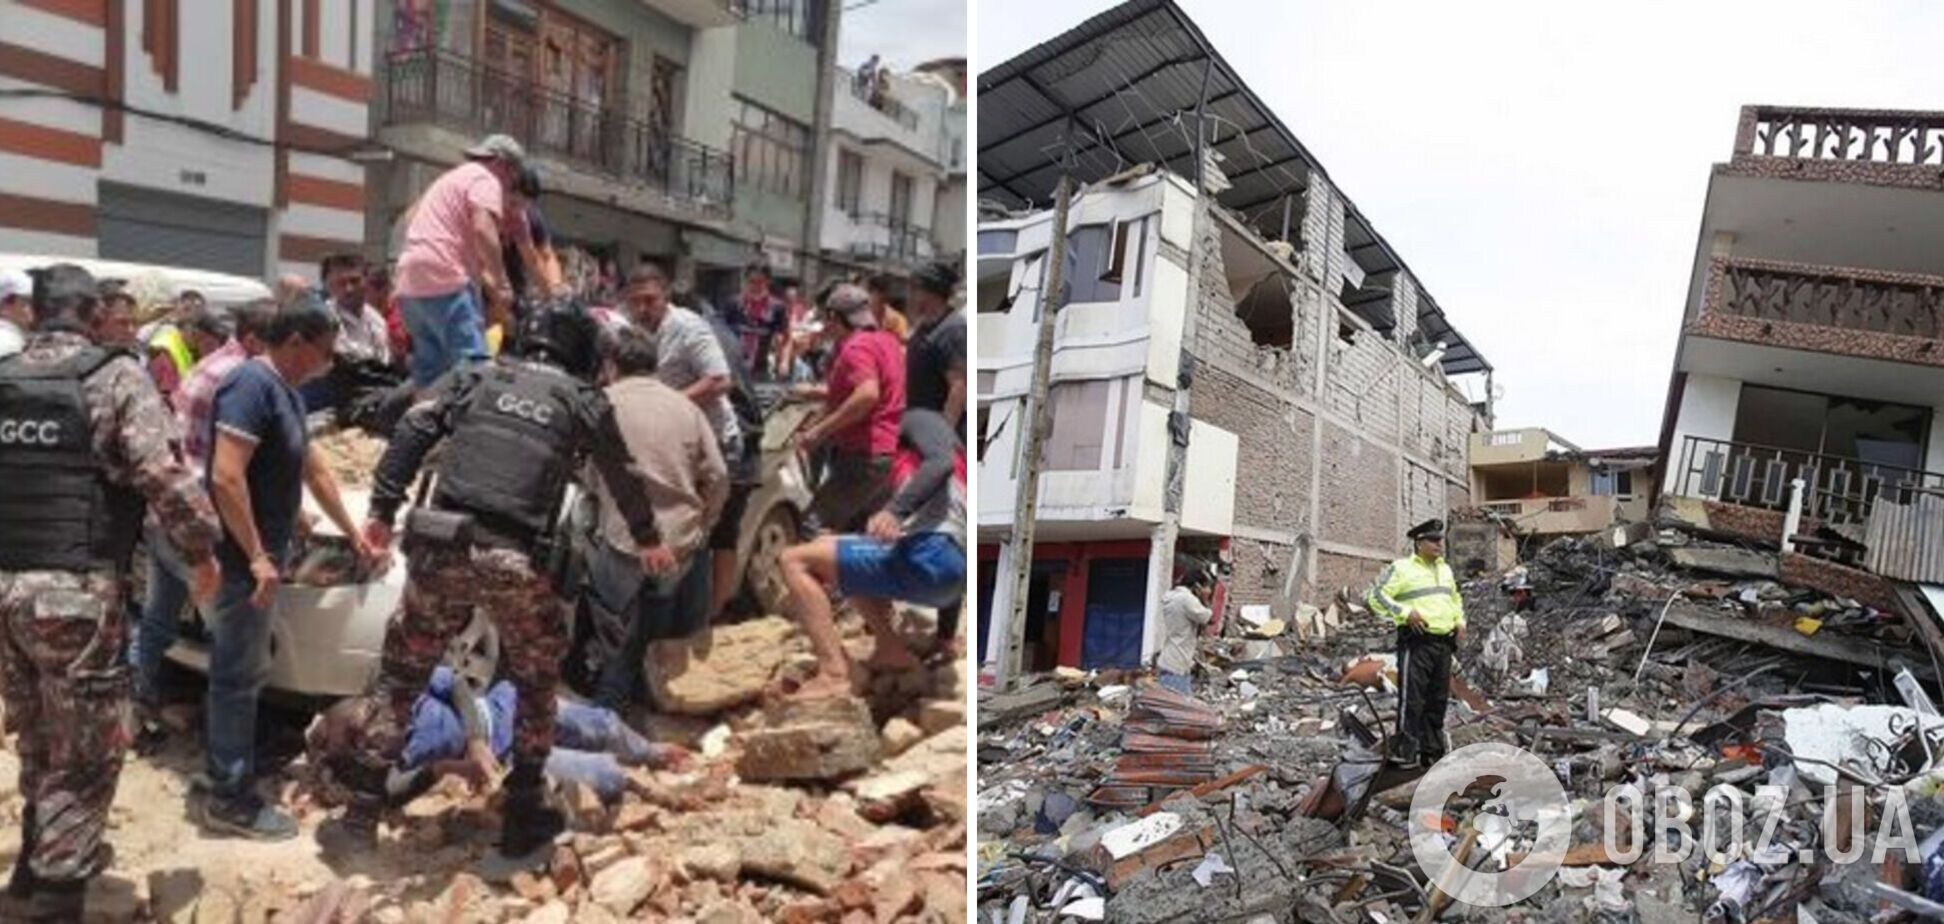 В Эквадоре землетрясение магнитудой 6,8 спровоцировало значительные разрушения: погибли 16 человек. Фото и видео